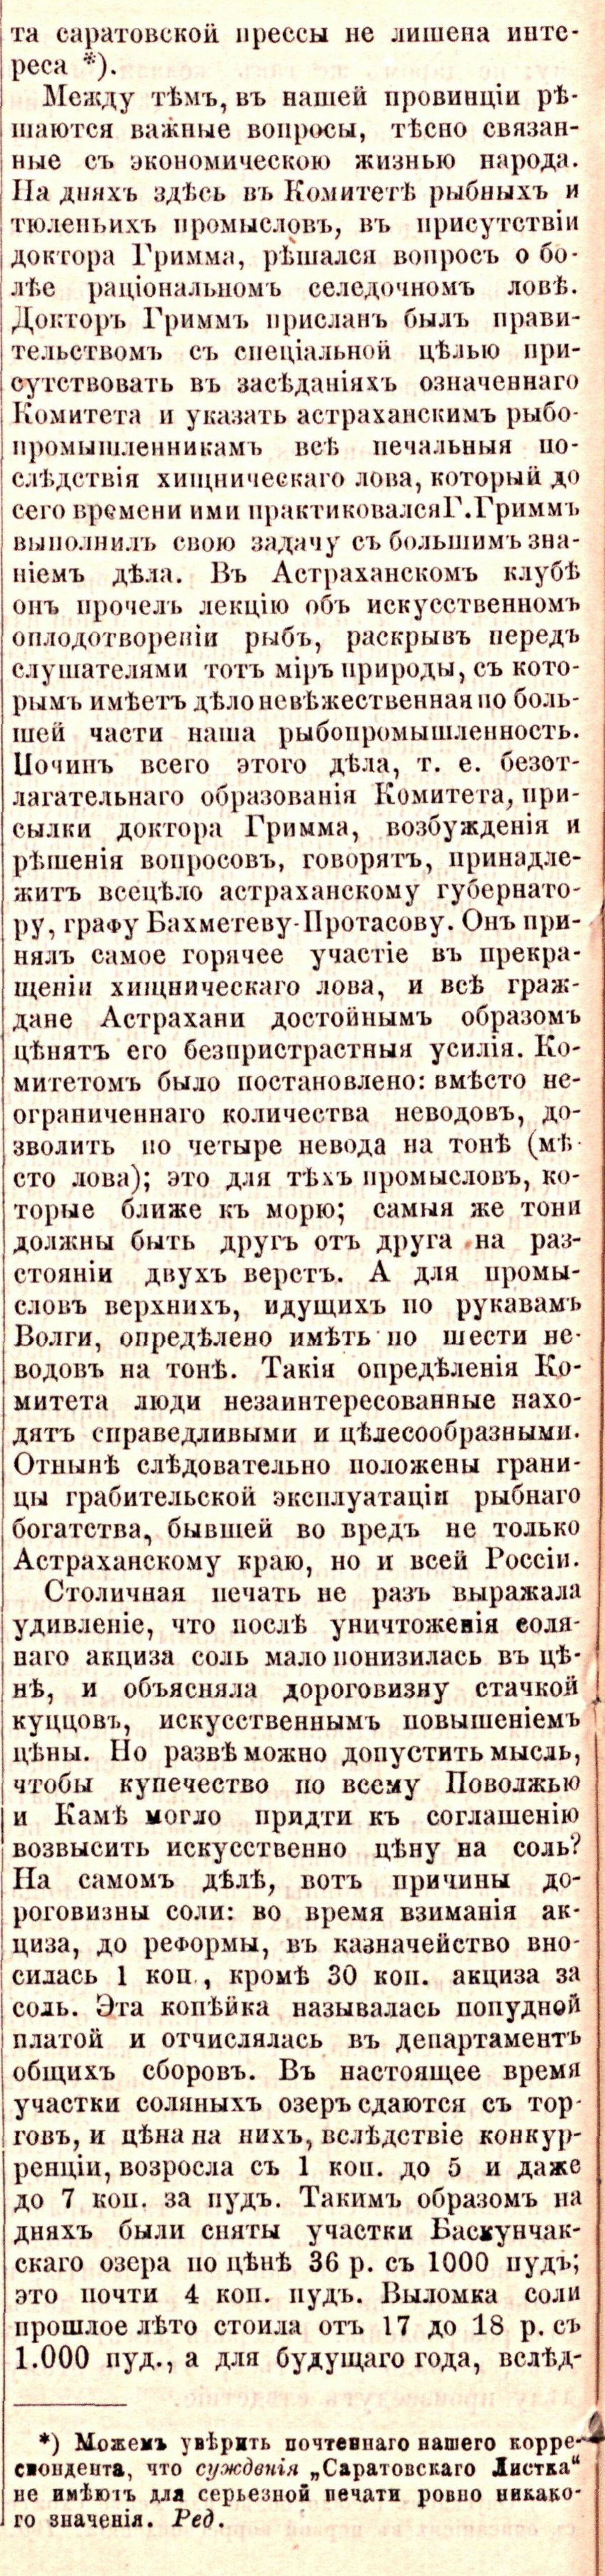 И. Г. Воронин - Из Астрахани - "Русь", № 59, 24 декабря 1881 года текст в современной орфографии, графическая копия